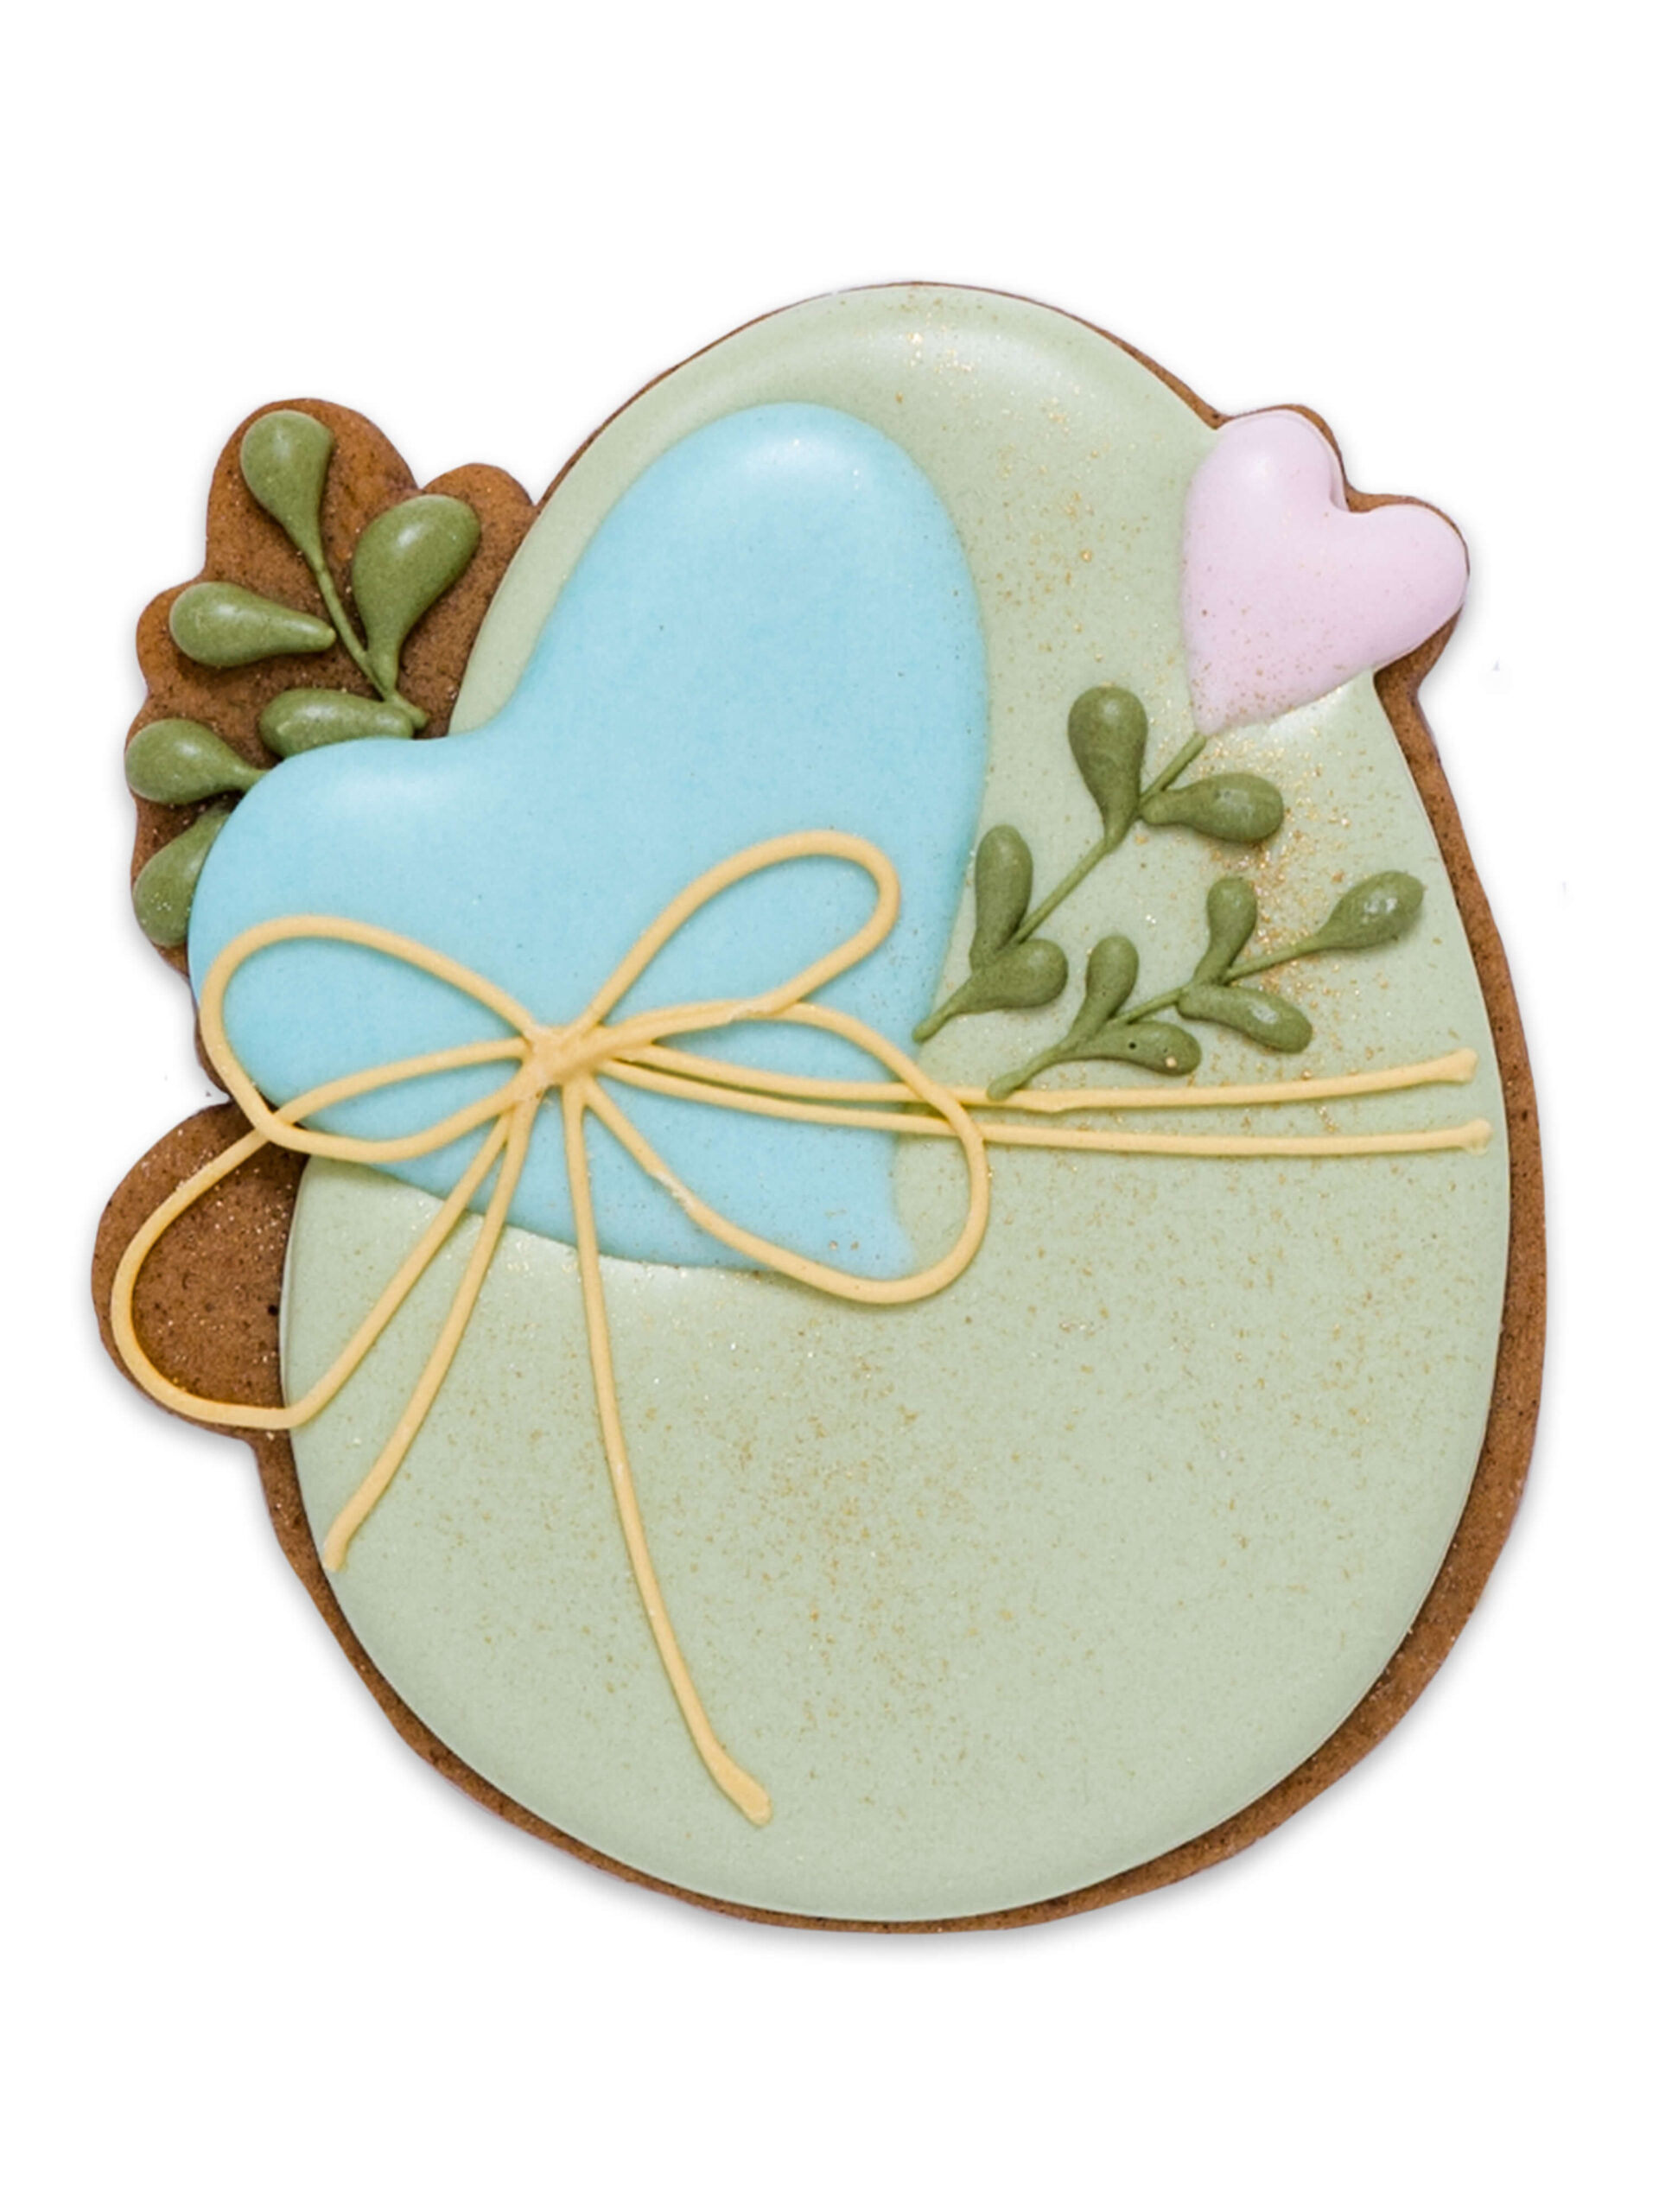 Turtă dulce în formă de ou decorată cu inimioare